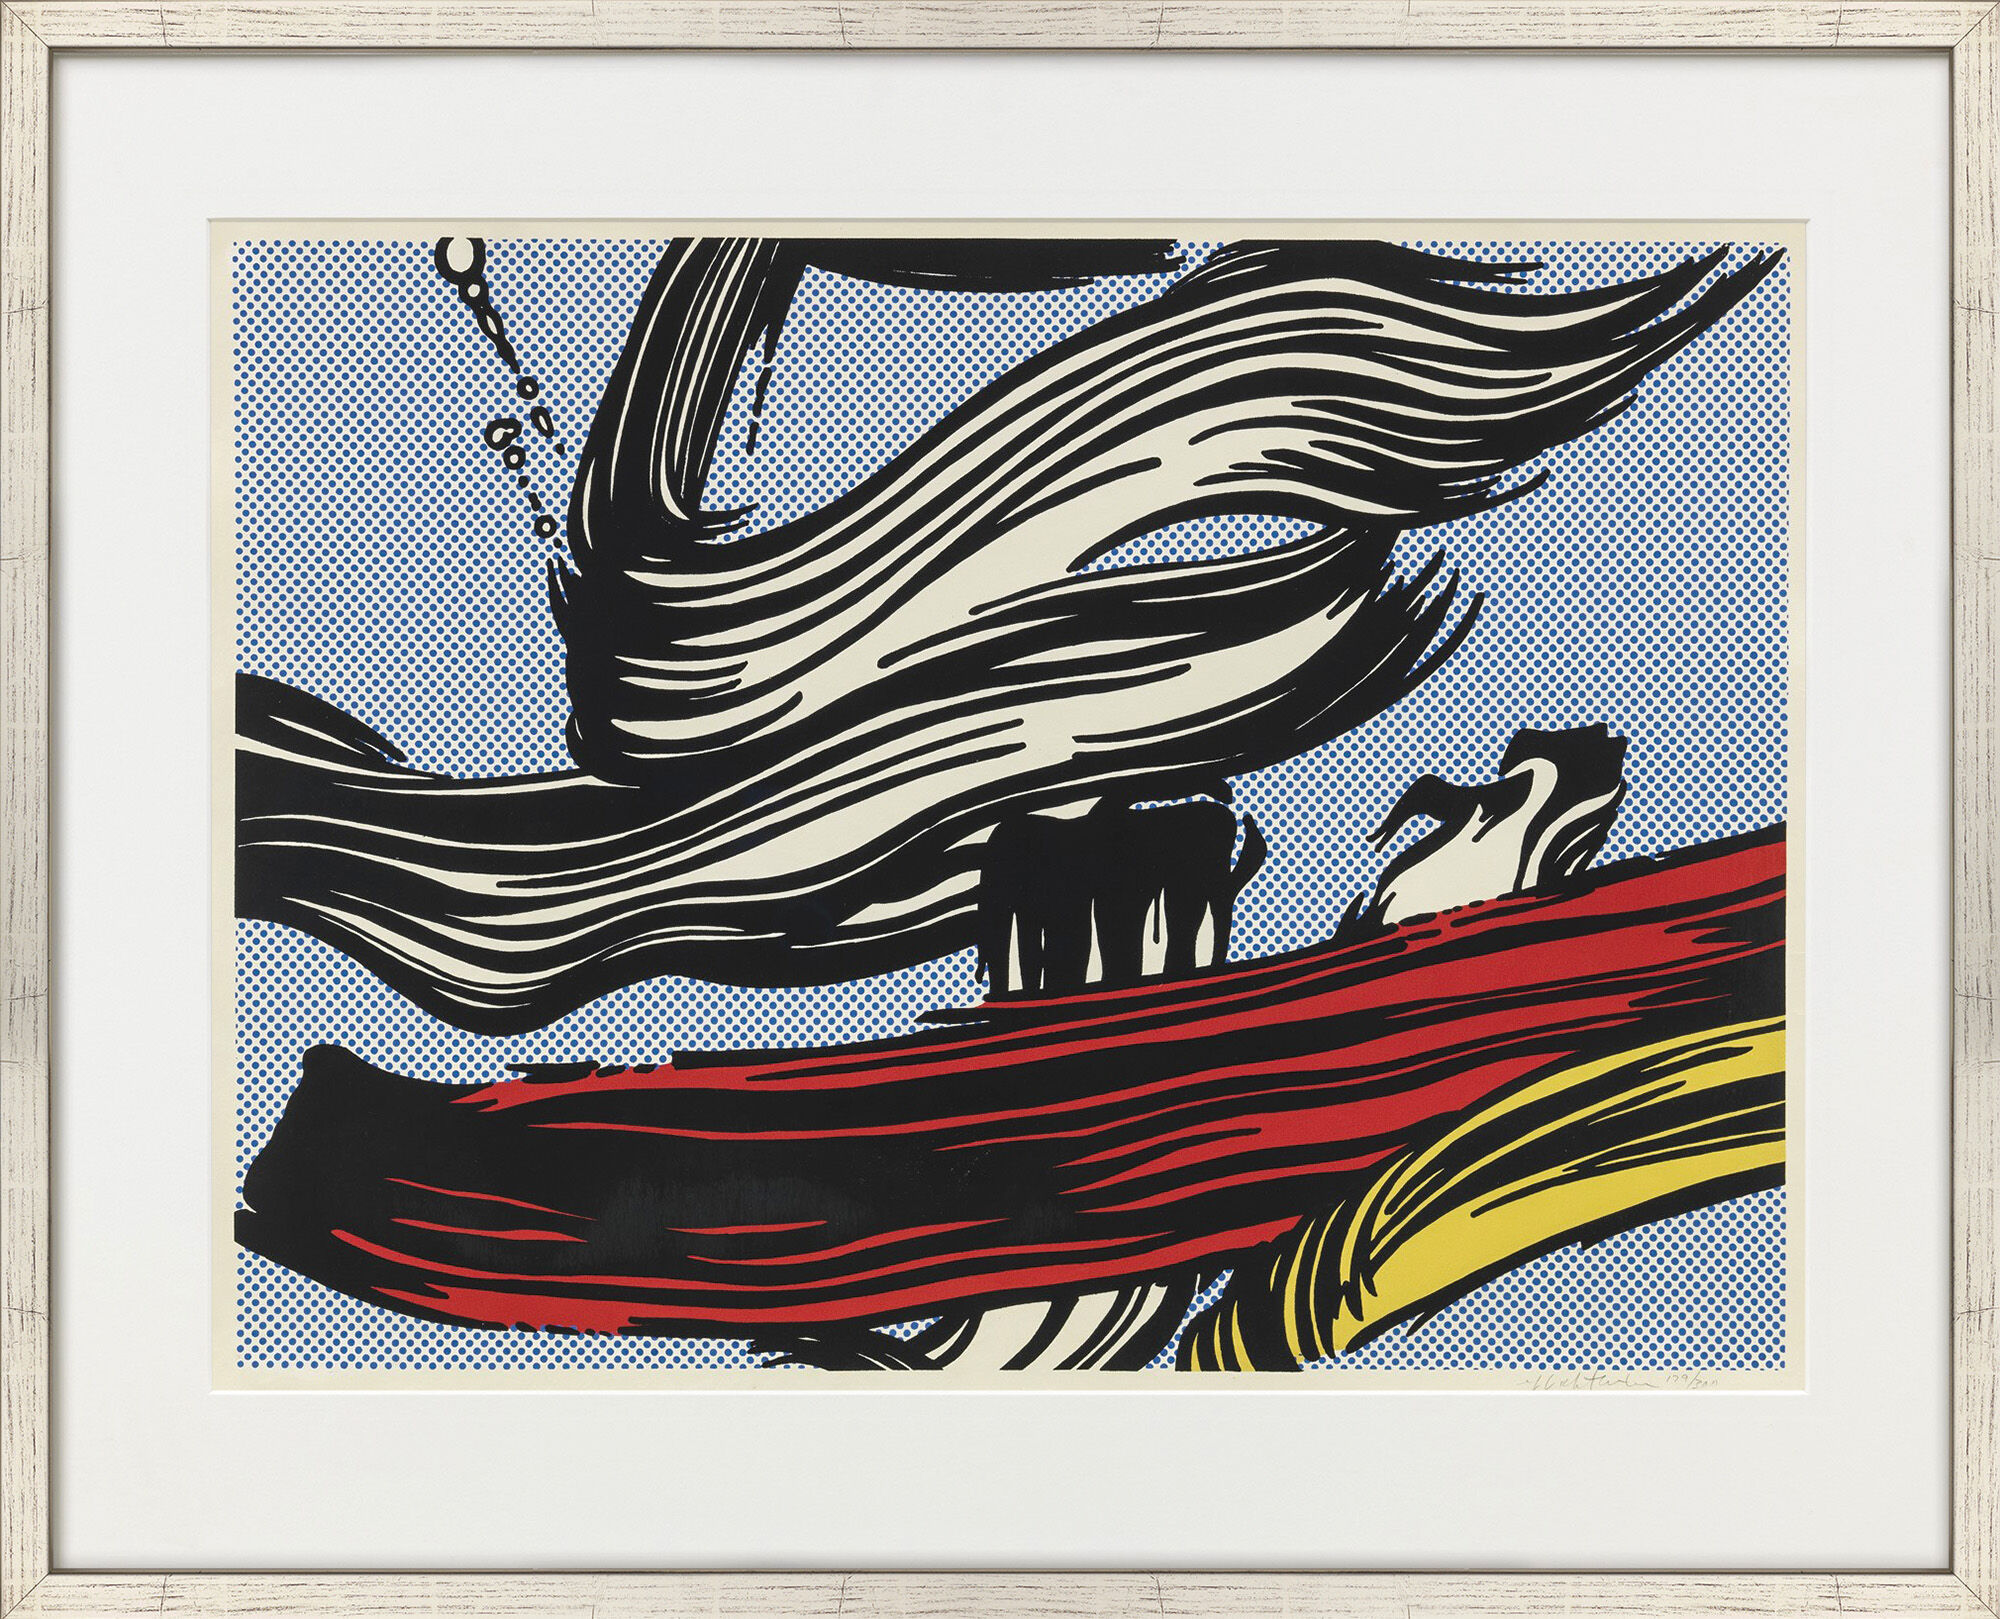 Bild "Brushstrokes" (1967) von Roy Lichtenstein